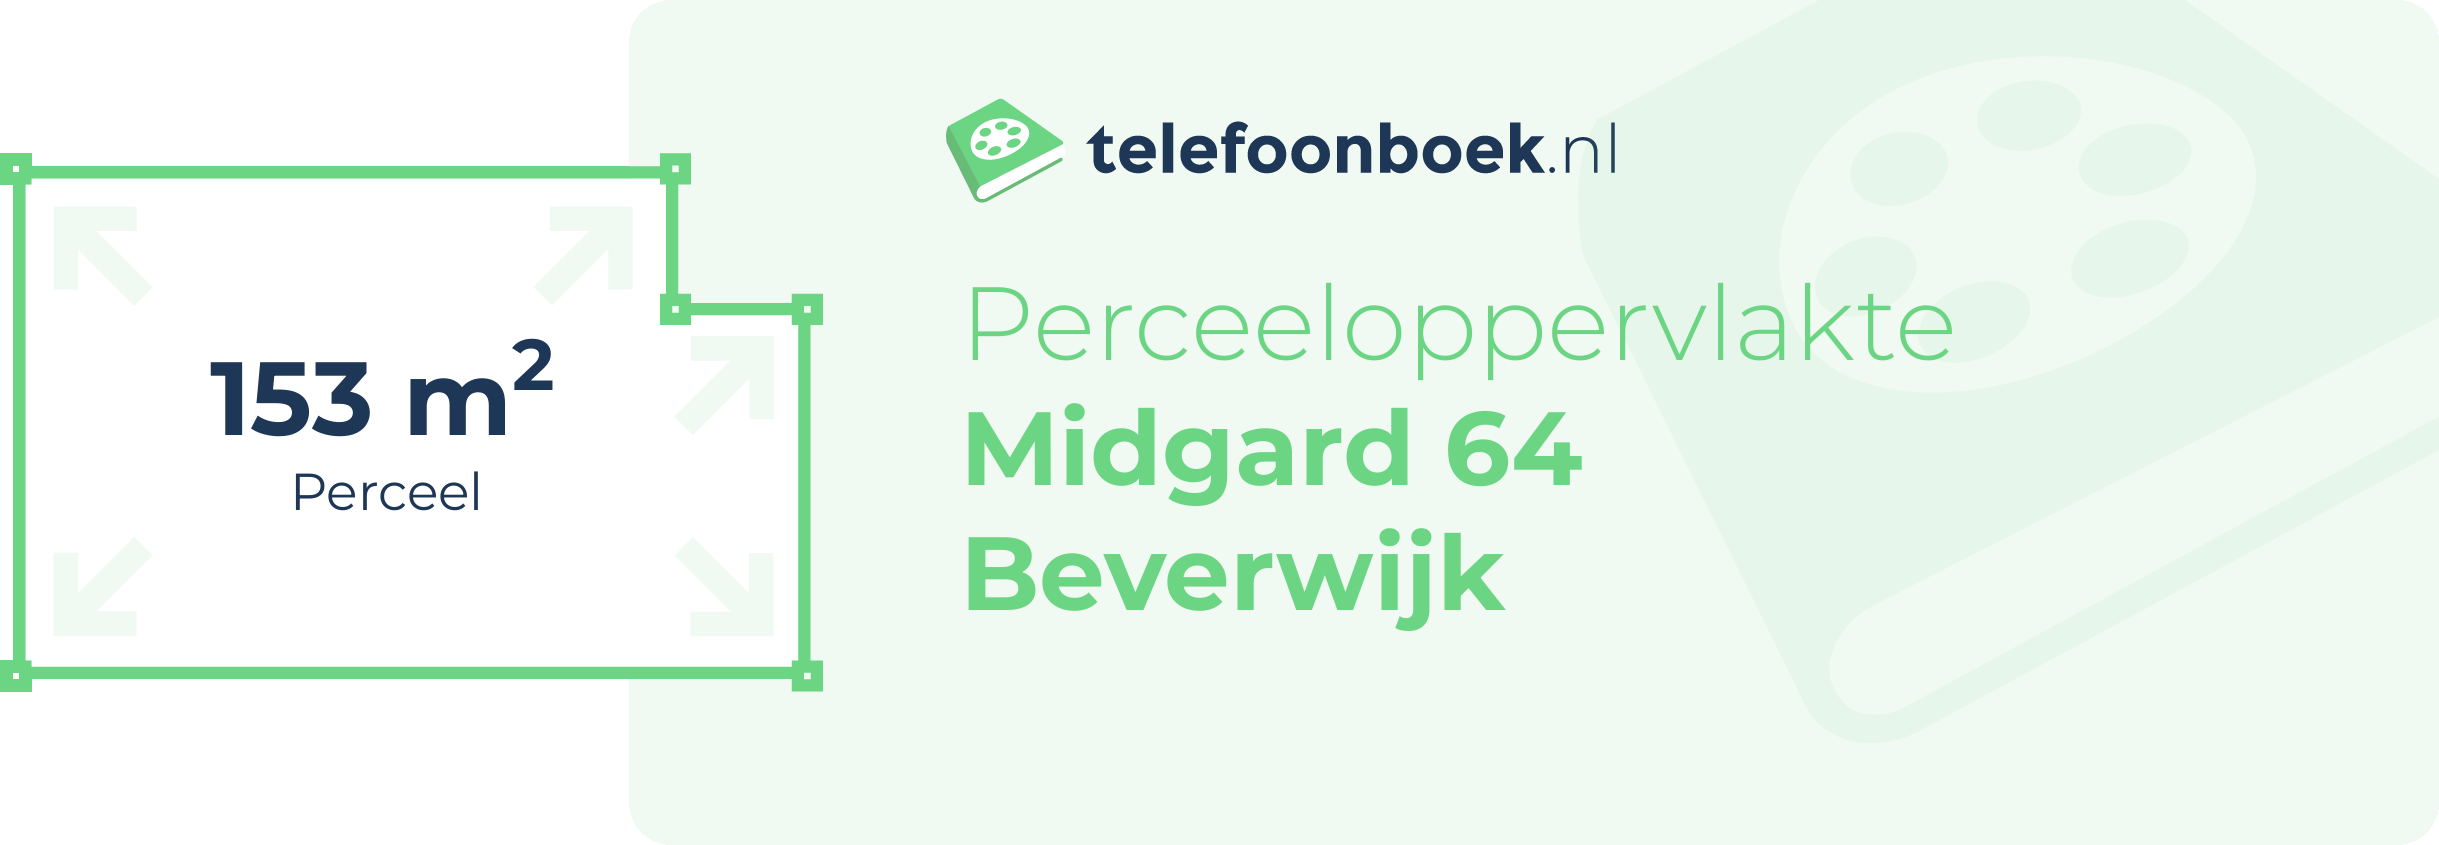 Perceeloppervlakte Midgard 64 Beverwijk